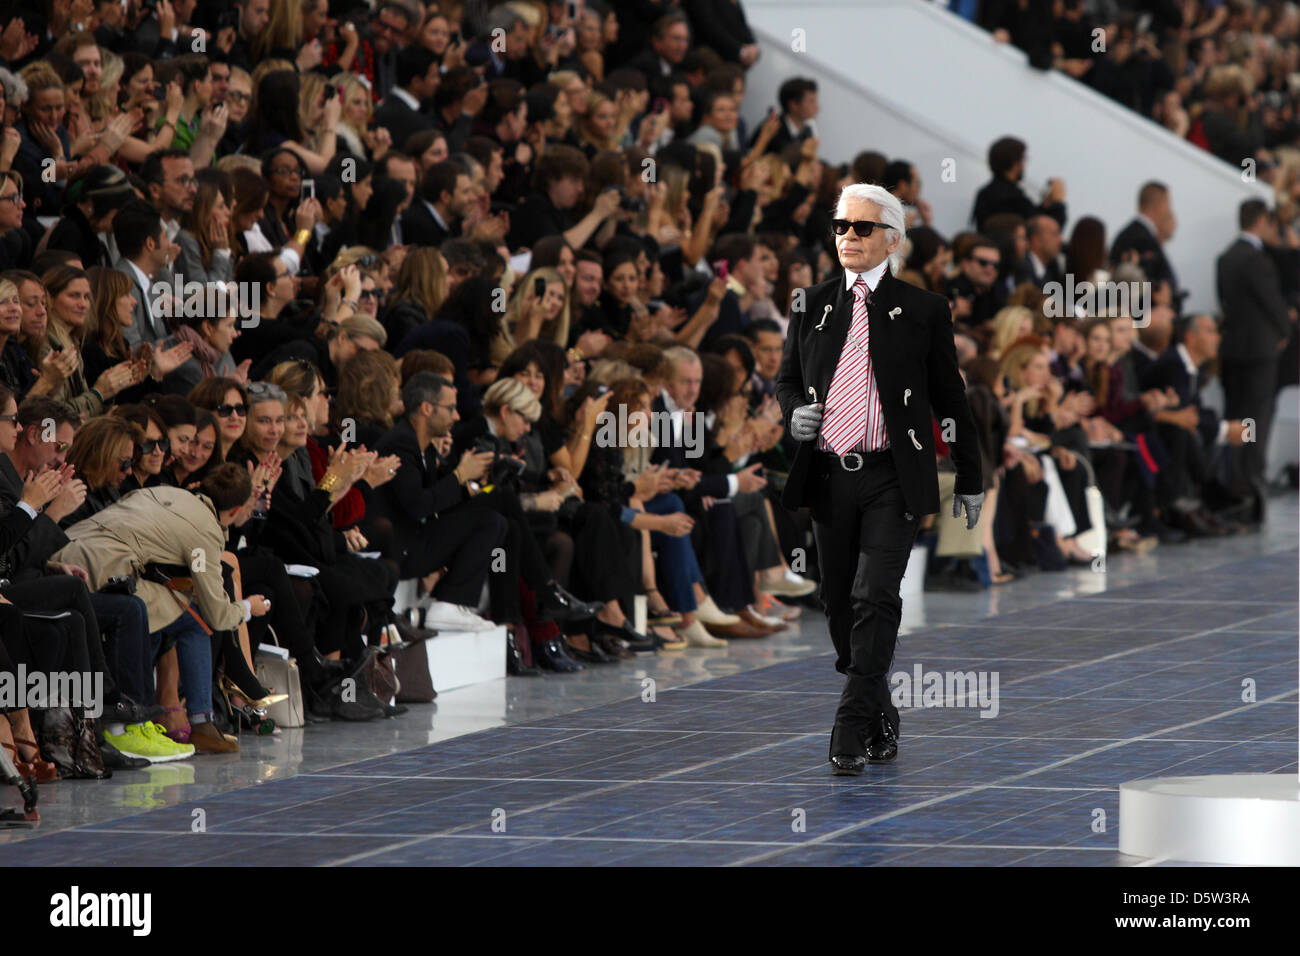 Designer allemand Karl Lagerfeld présente cannaux printemps/été 2013 collection durant la Fashion Week de Paris 'prêt à porter' Printemps/été 2013 à Paris, France, 02 octobre 2012. La fashion week se déroule du 25 septembre au 03 octobre. Photo : Hendrik Ballhausen Banque D'Images